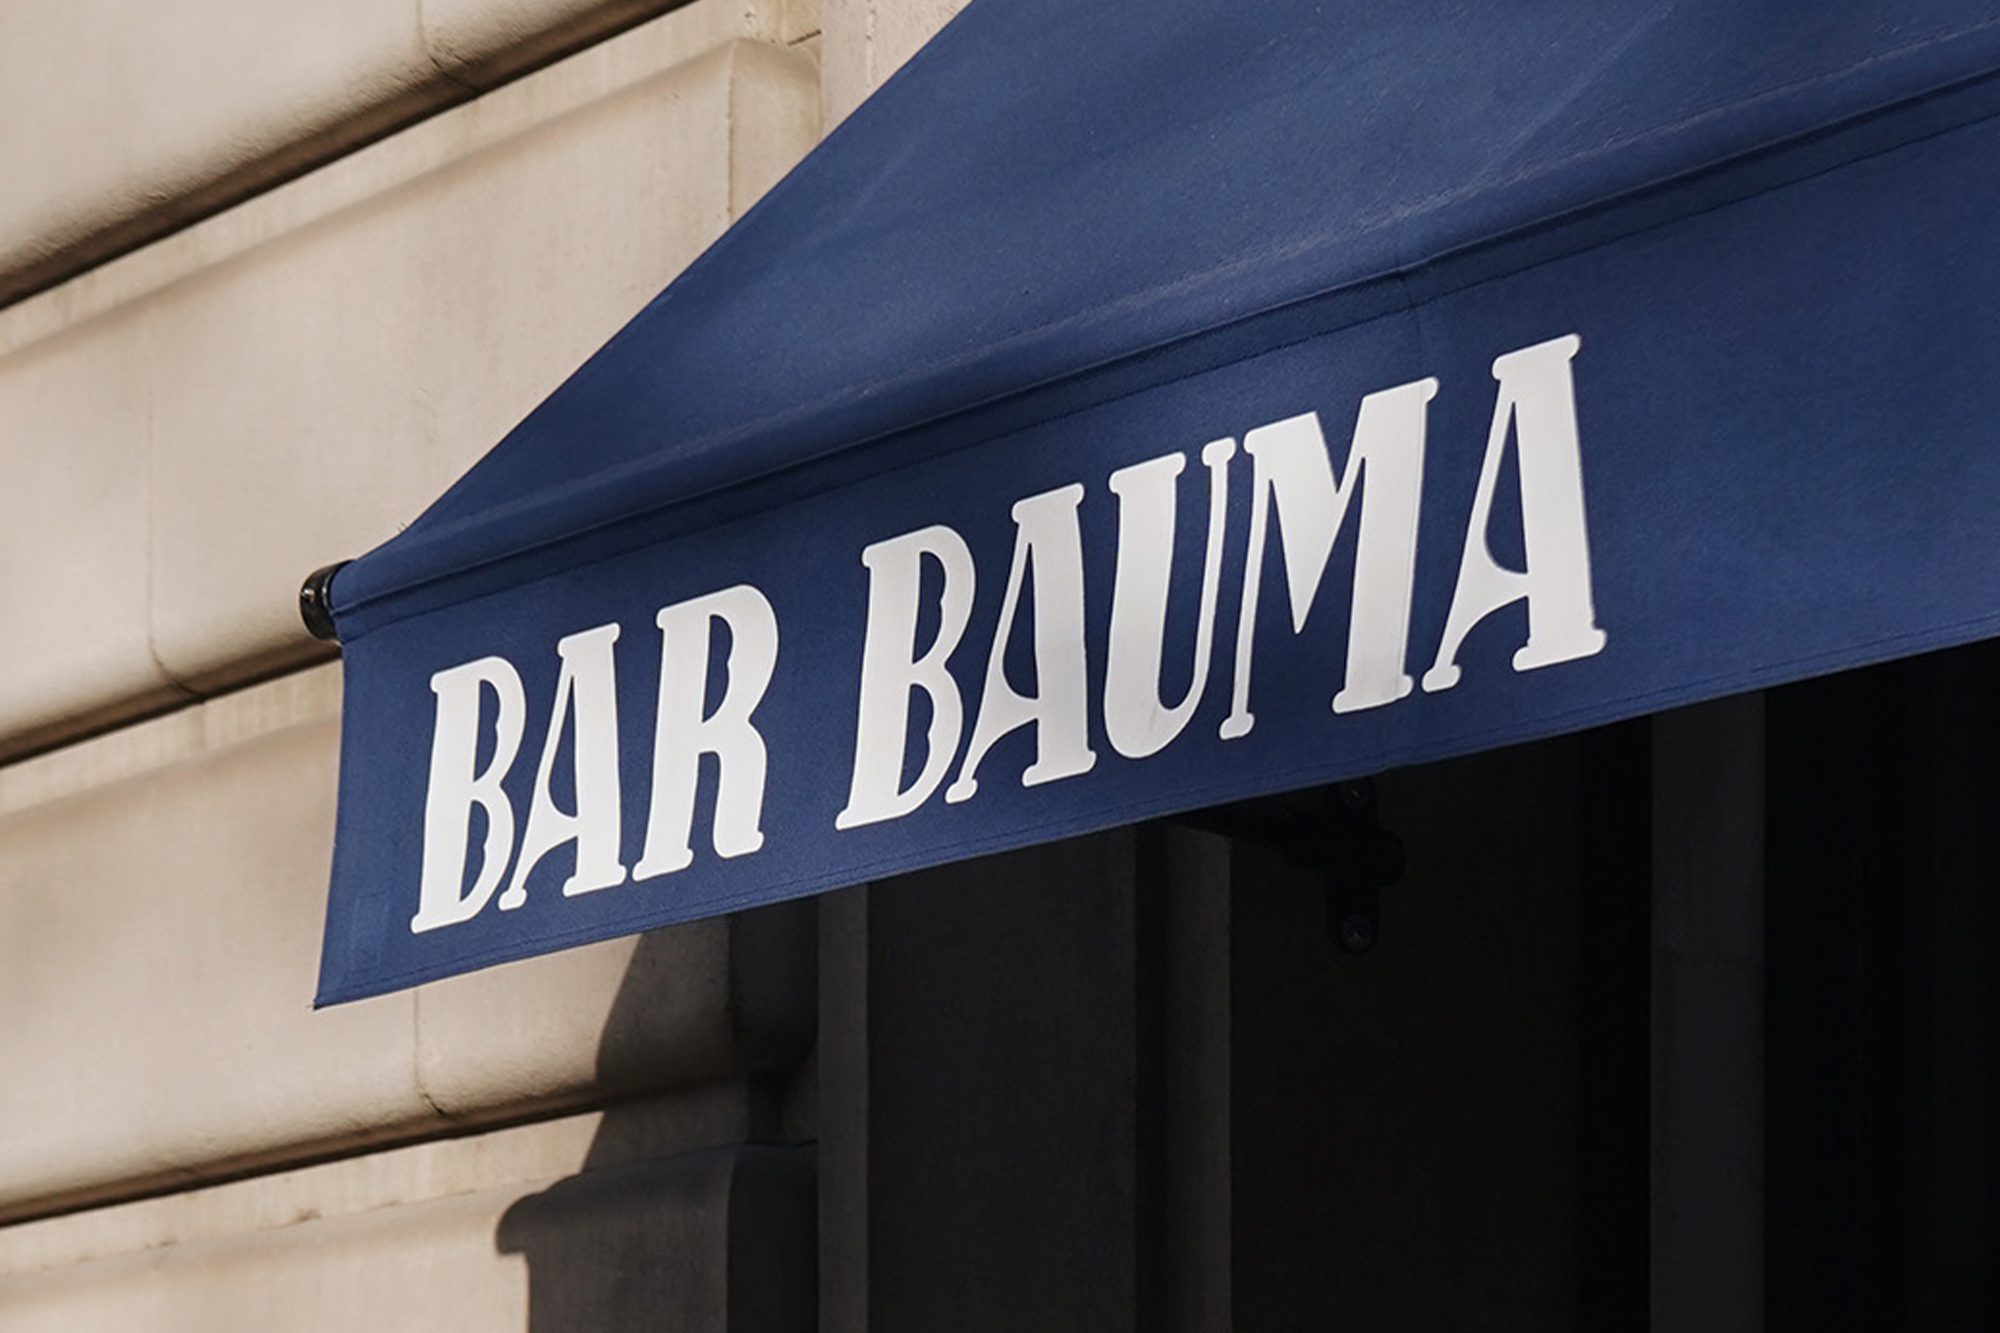 Bar Bauma